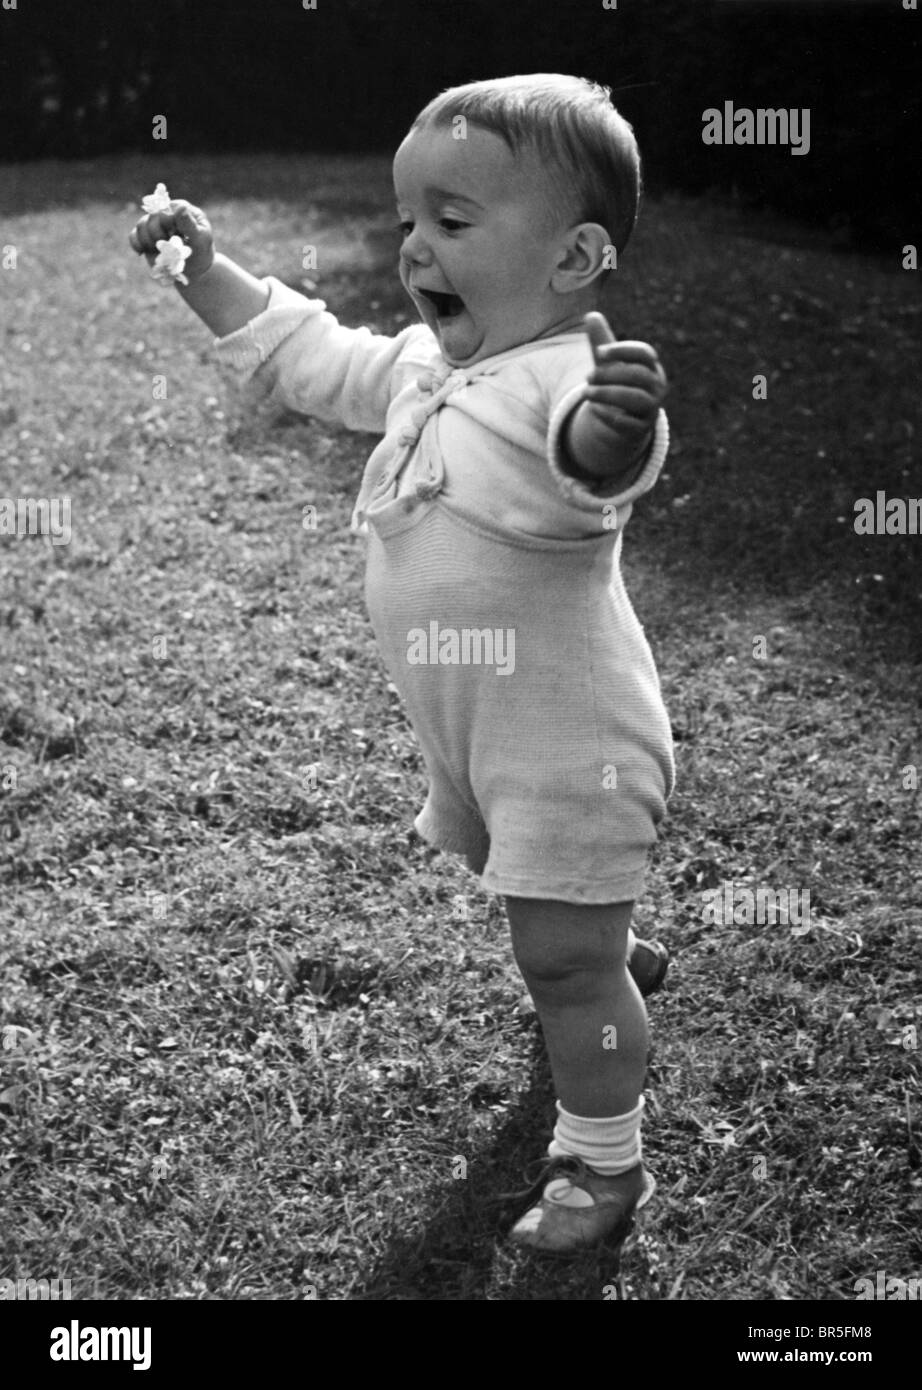 Photographie historique, petit garçon l'apprentissage de la marche, vers 1924 Banque D'Images